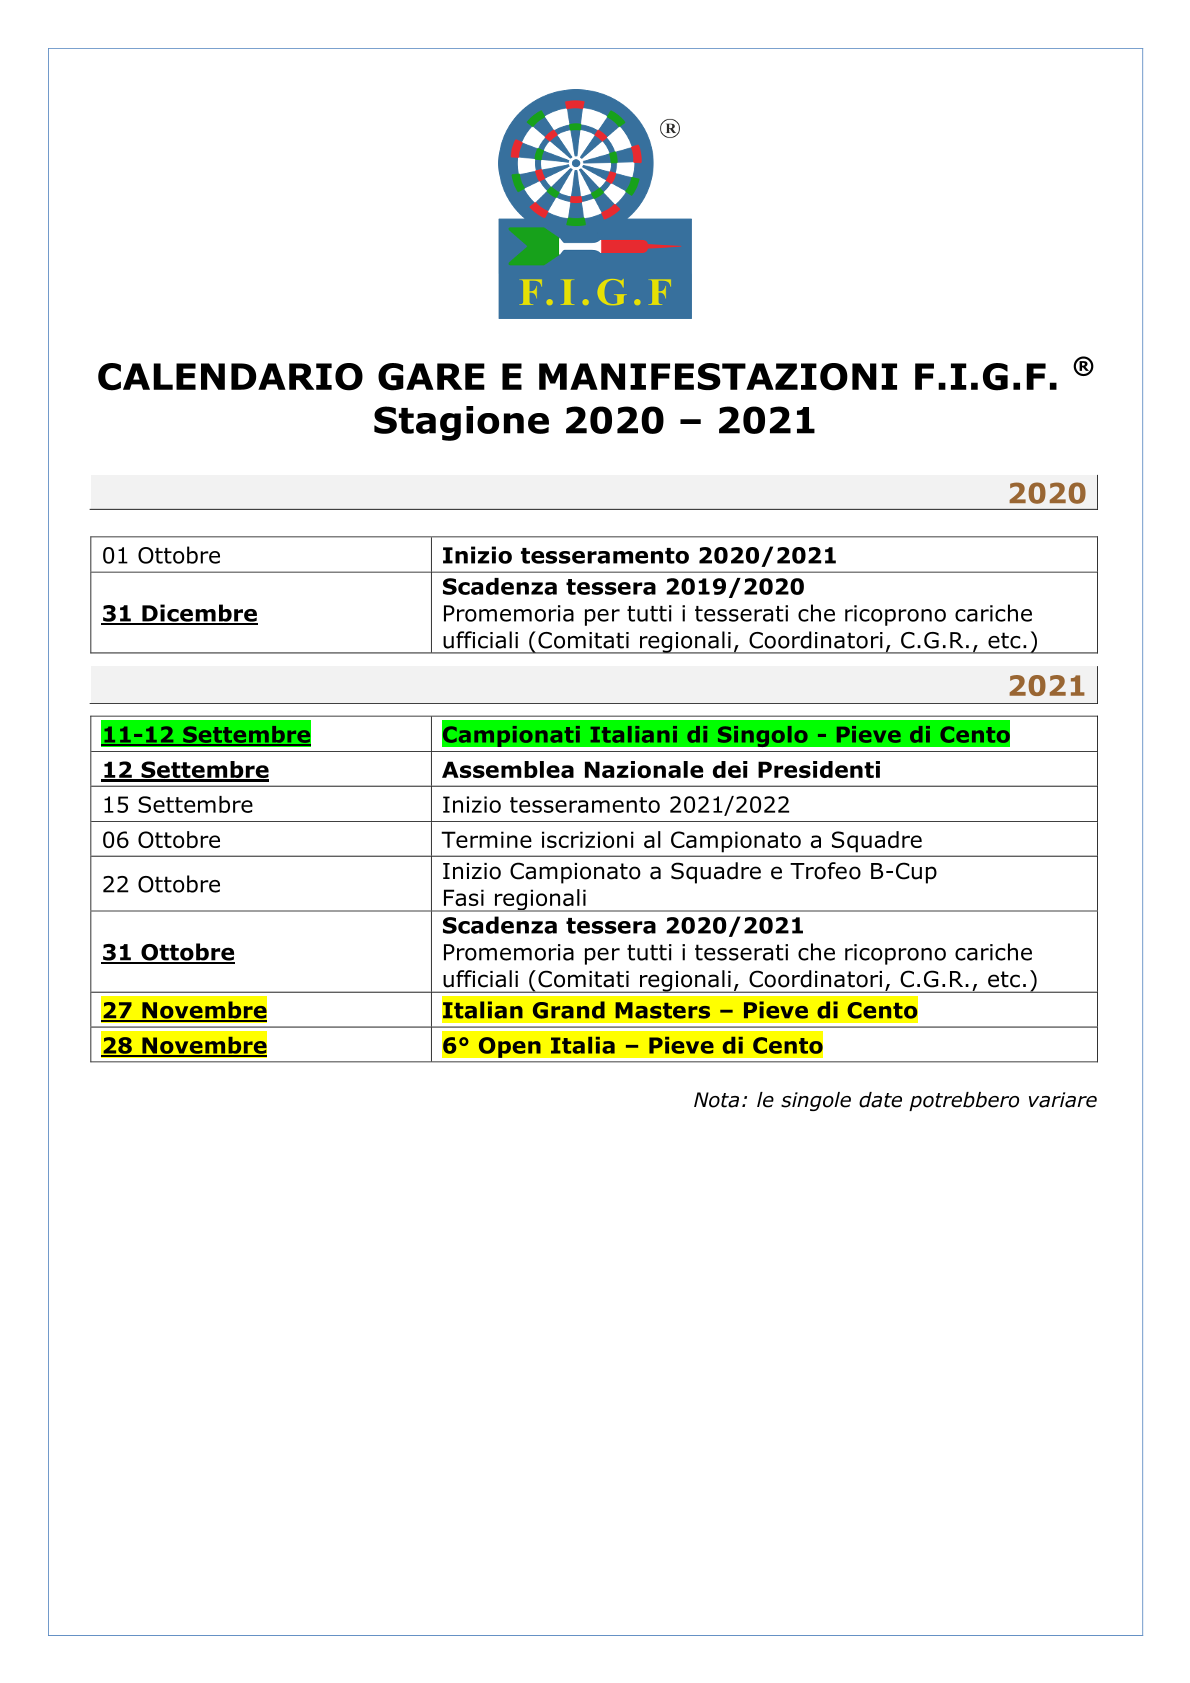 CALENDARIO GARE E MANIFESTAZIONI F.I.G.F. TRE